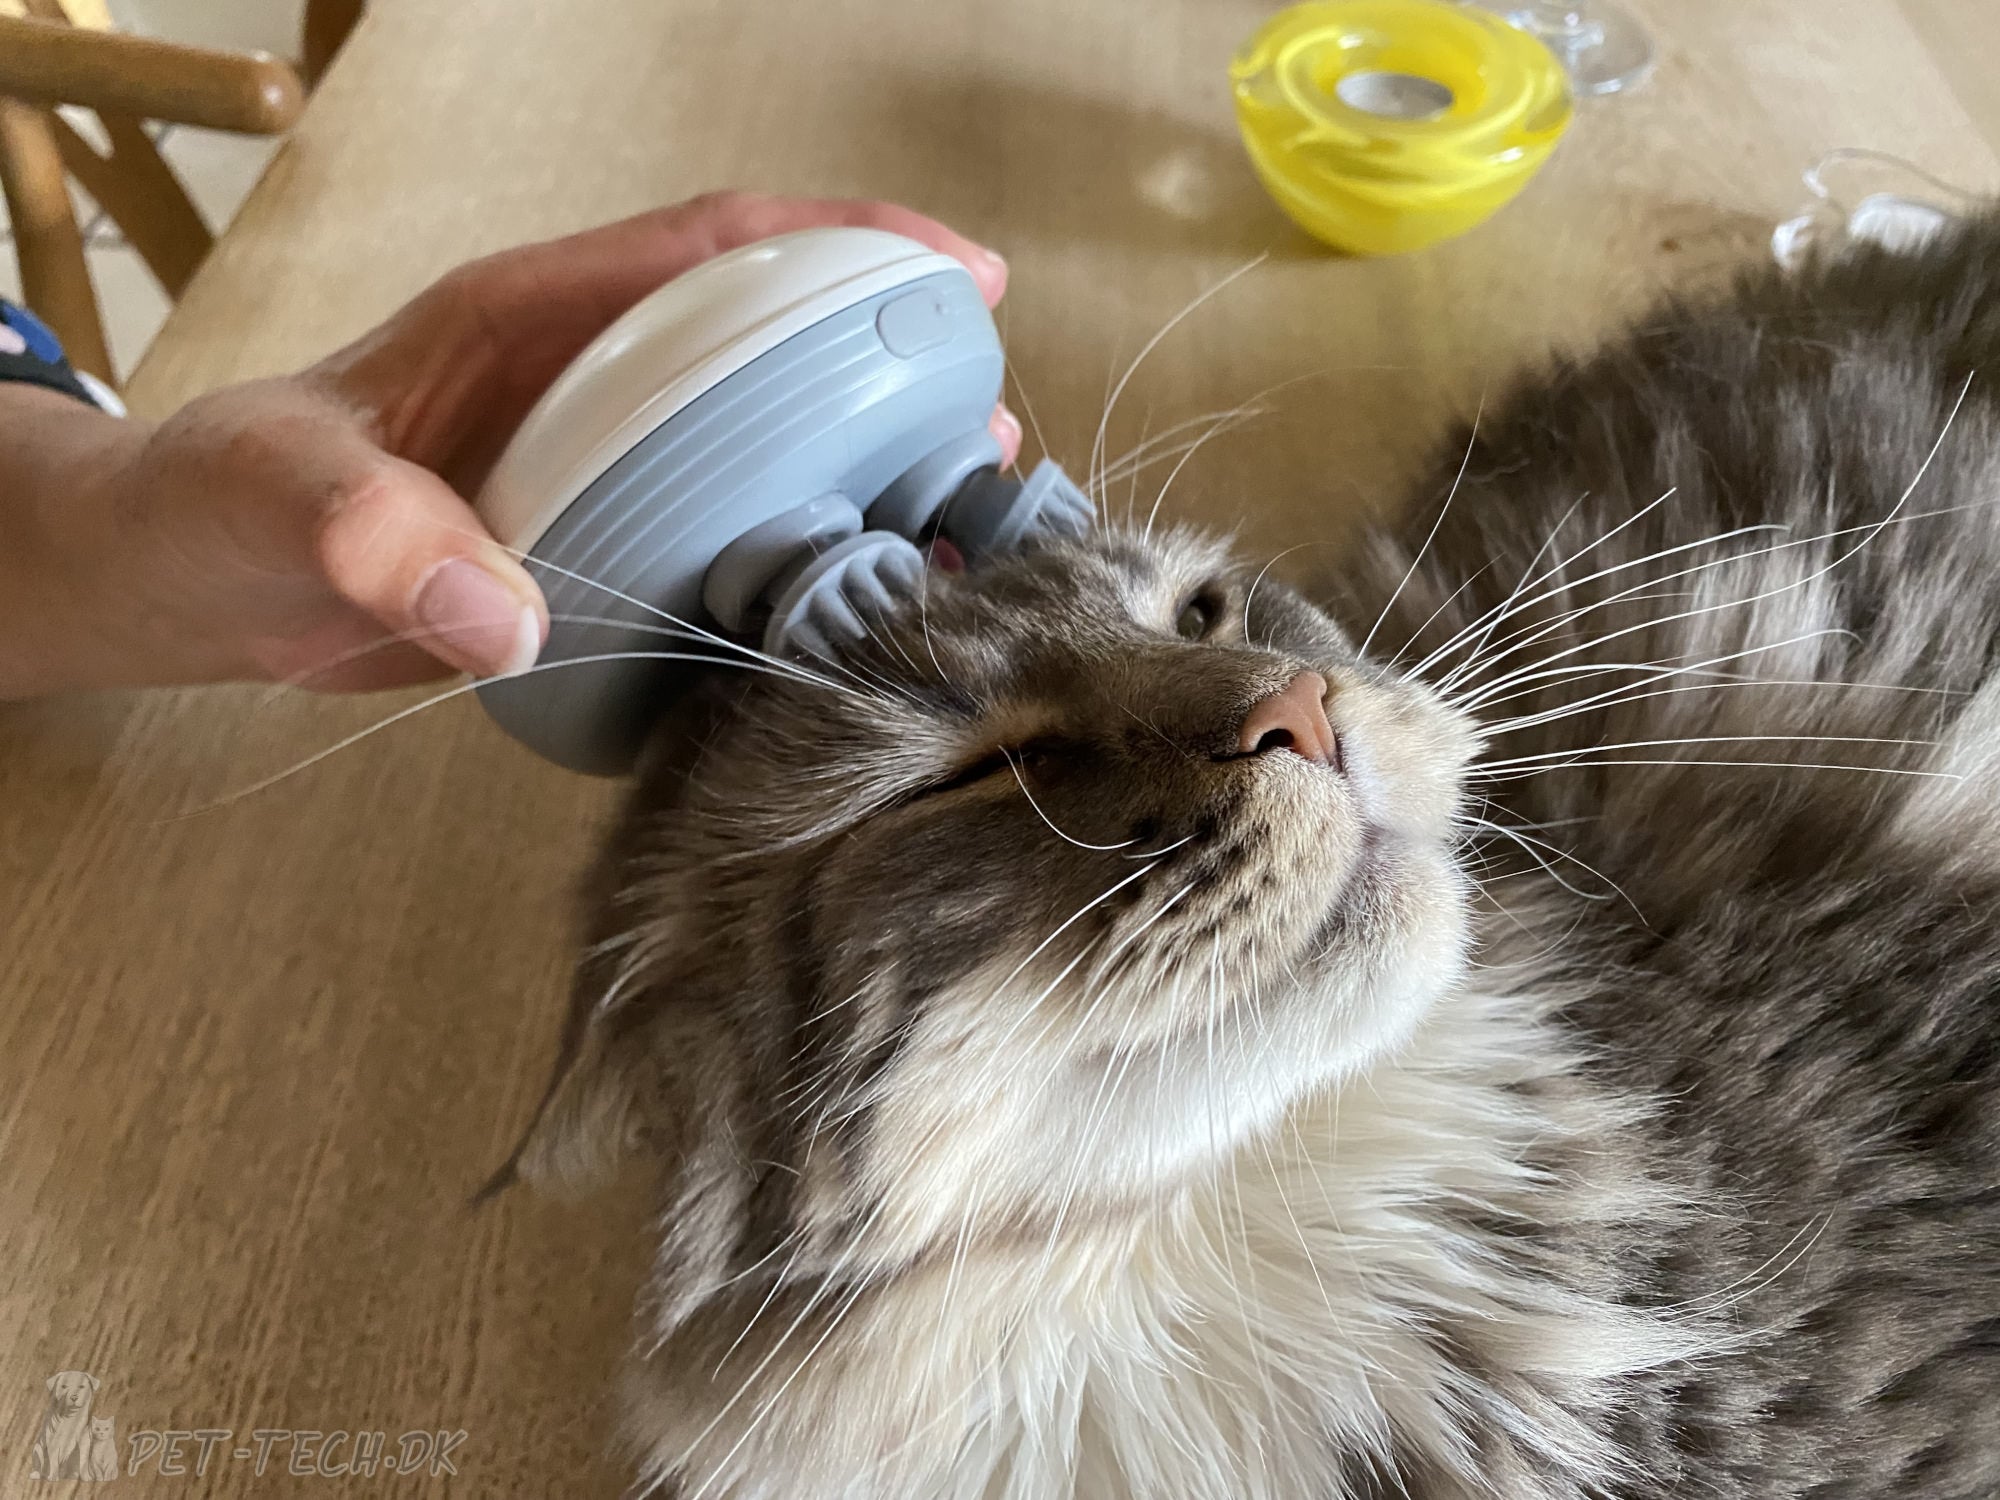 Kat får massage af massageapparat